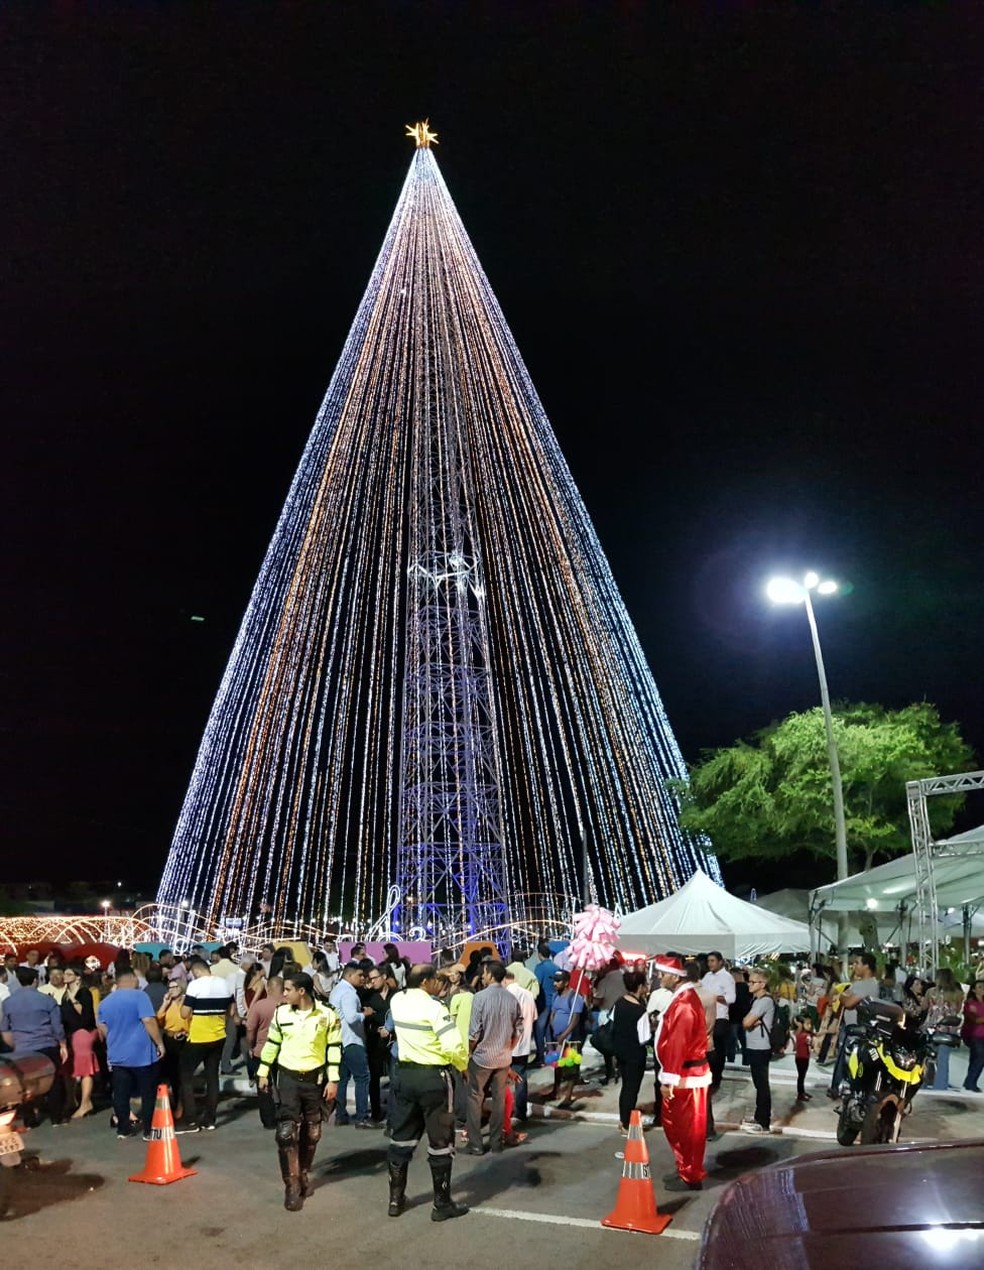 Prefeitura divulga programação semanal do Natal em Natal no Centro  Histórico e na Árvore de Mirassol | Rio Grande do Norte | G1